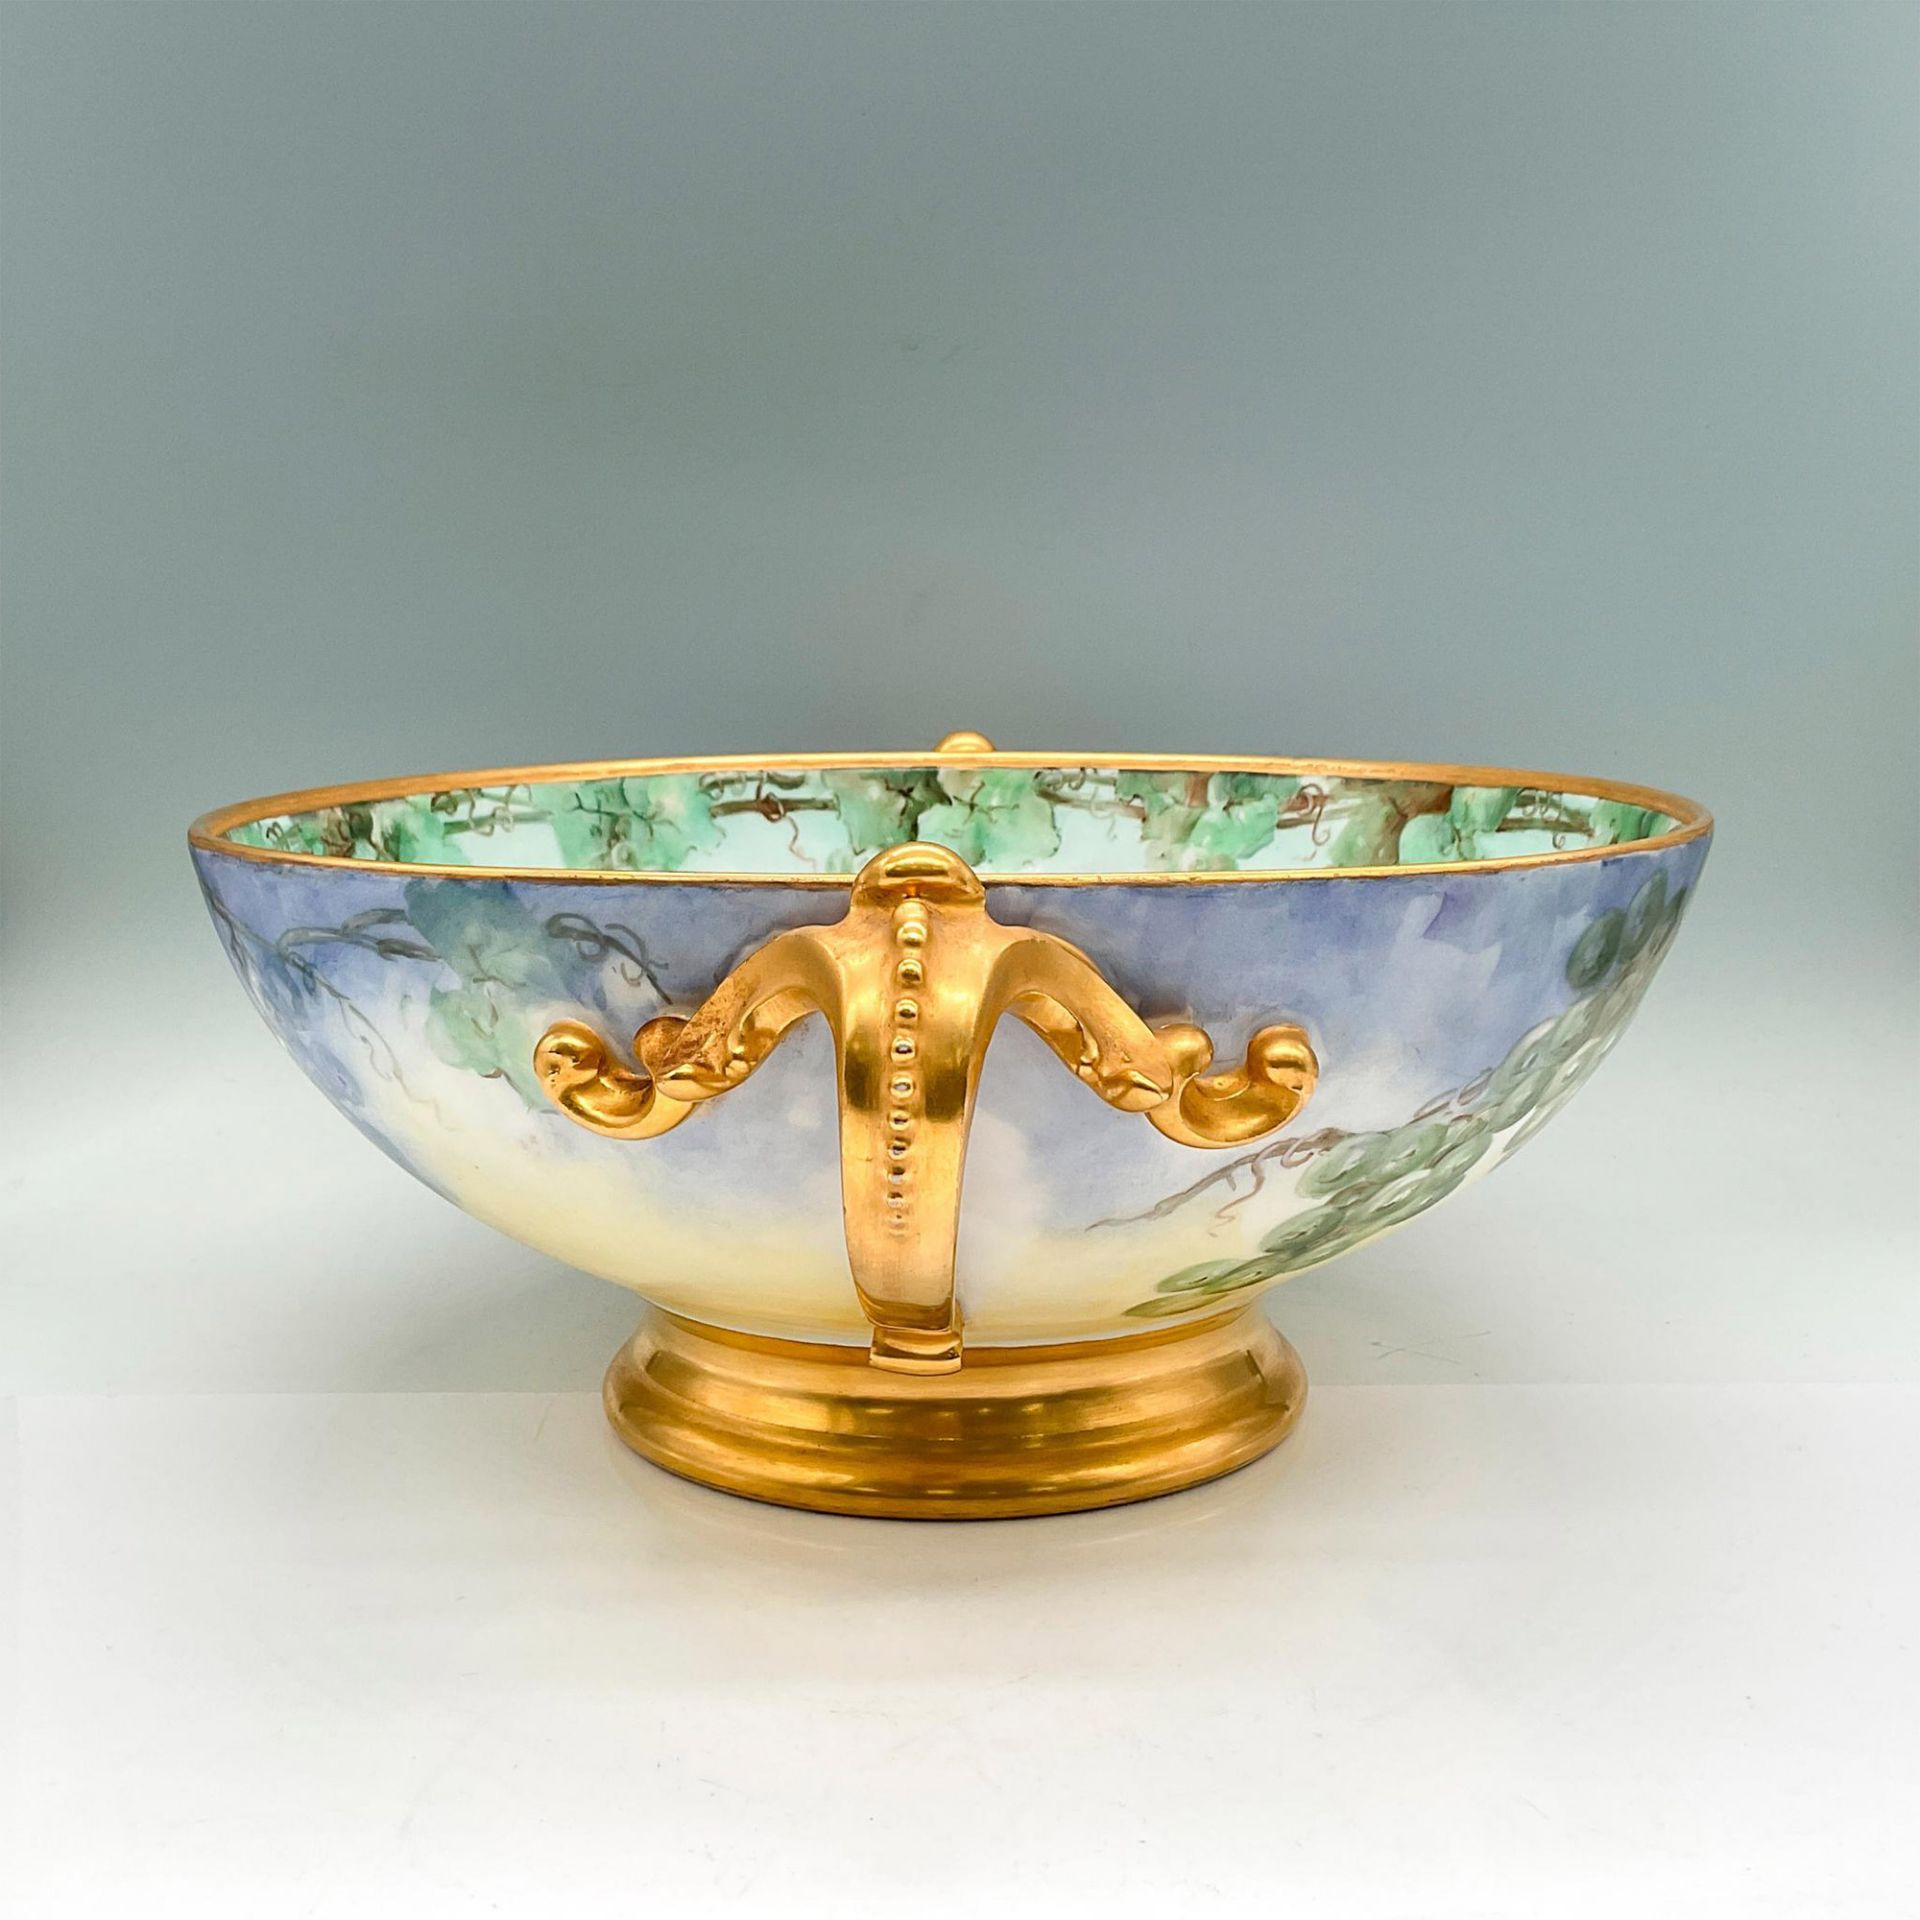 11pc Tressemanes Vogt Limoges Porcelain Bowl and Cups, Grape - Image 9 of 15